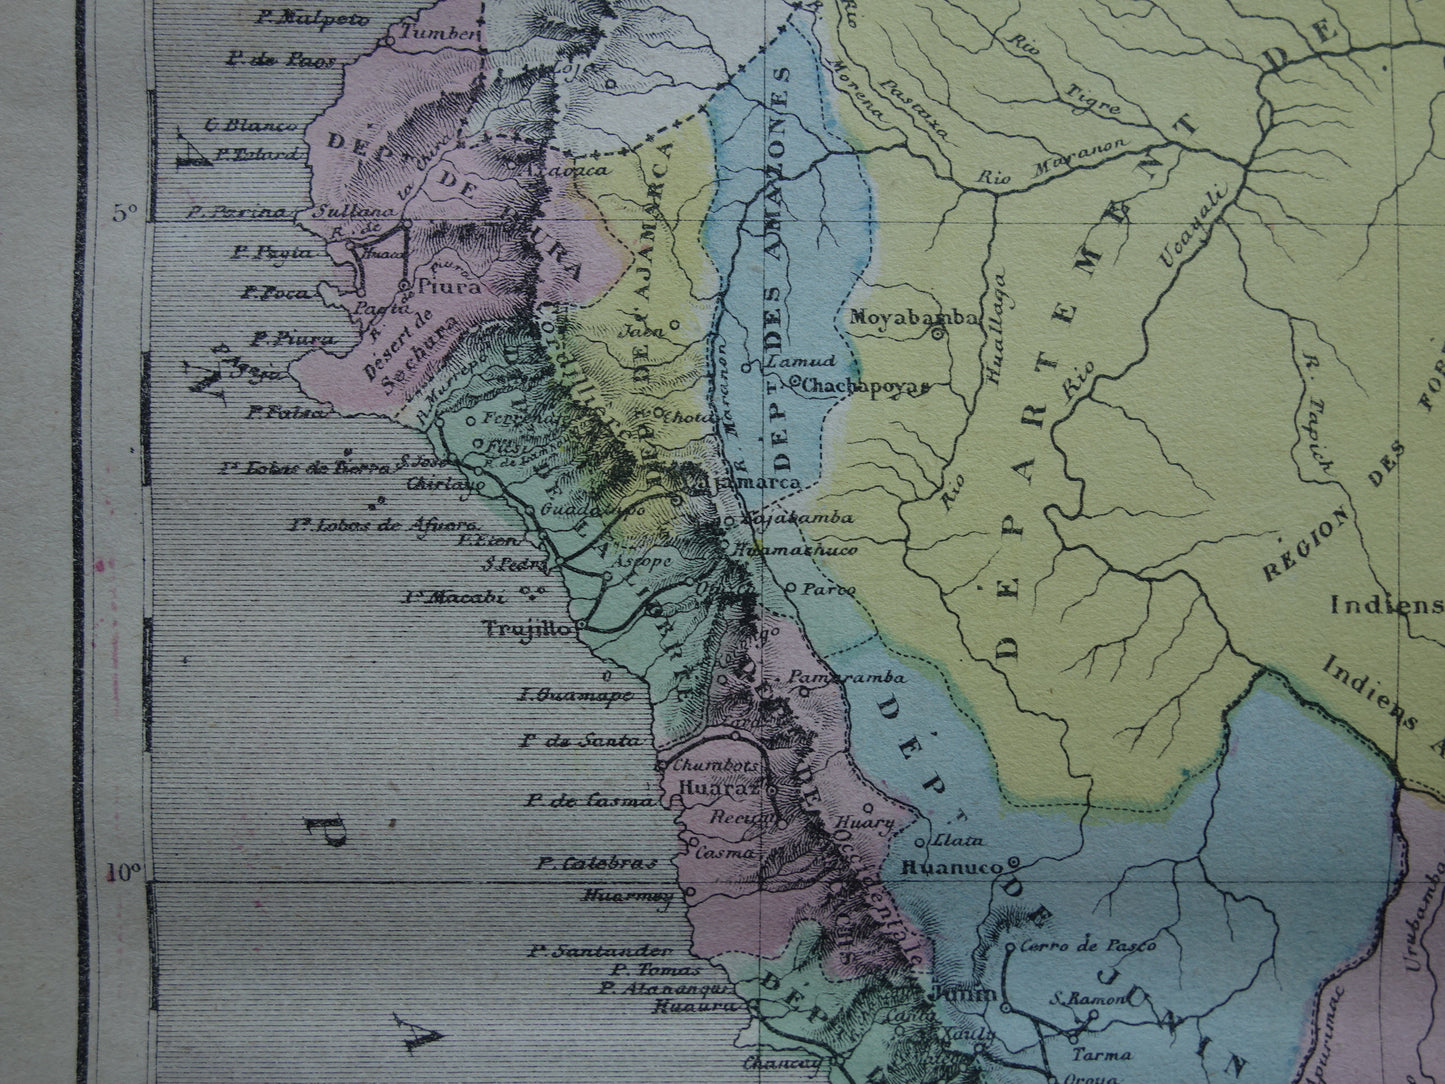 PERU Oude kaart van Peru uit 1877 originele antieke handgekleurde Franse landkaart Peru vintage kaarten